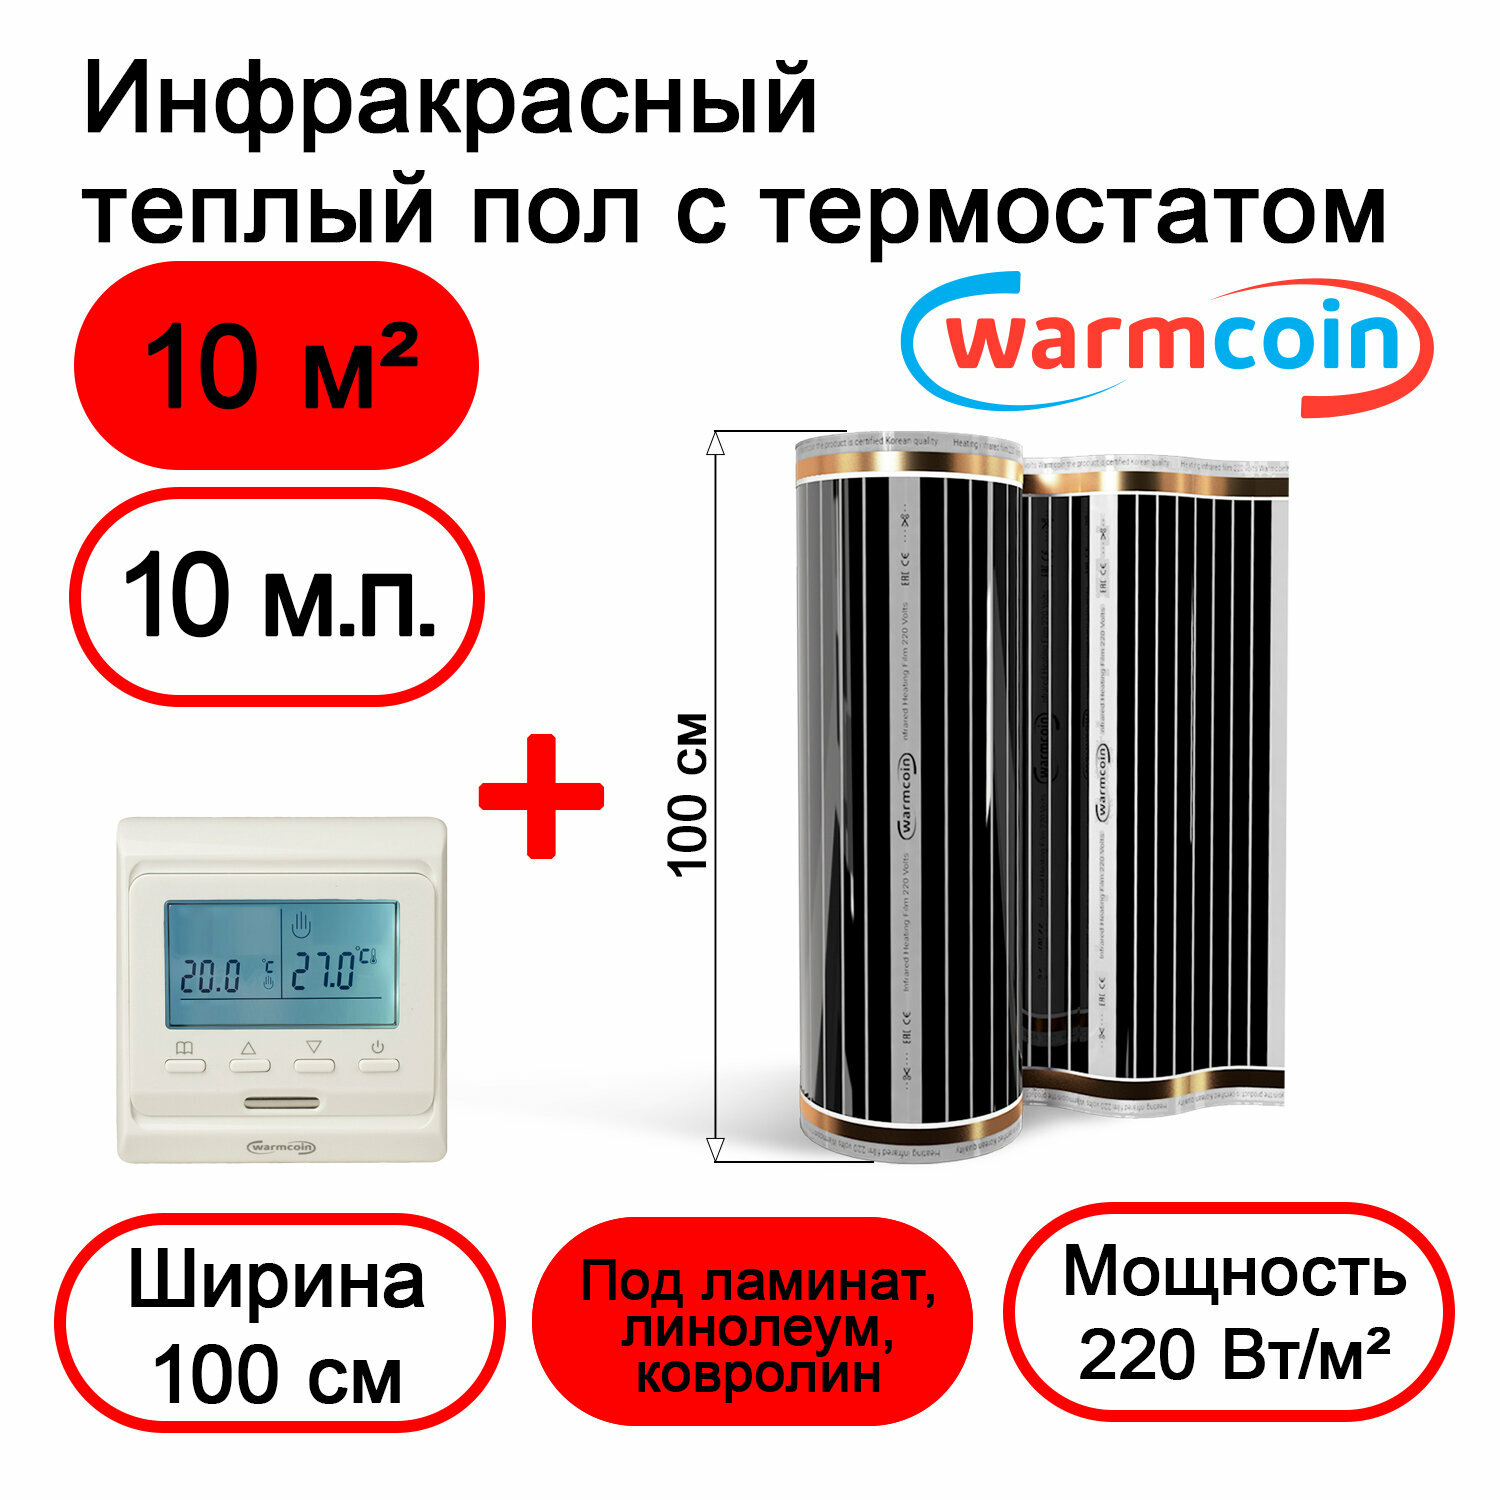 Теплый пол Warmcoin инфракрасный 100 см, 220 Вт/м.кв. с электронным терморегулятором, 8 м.п